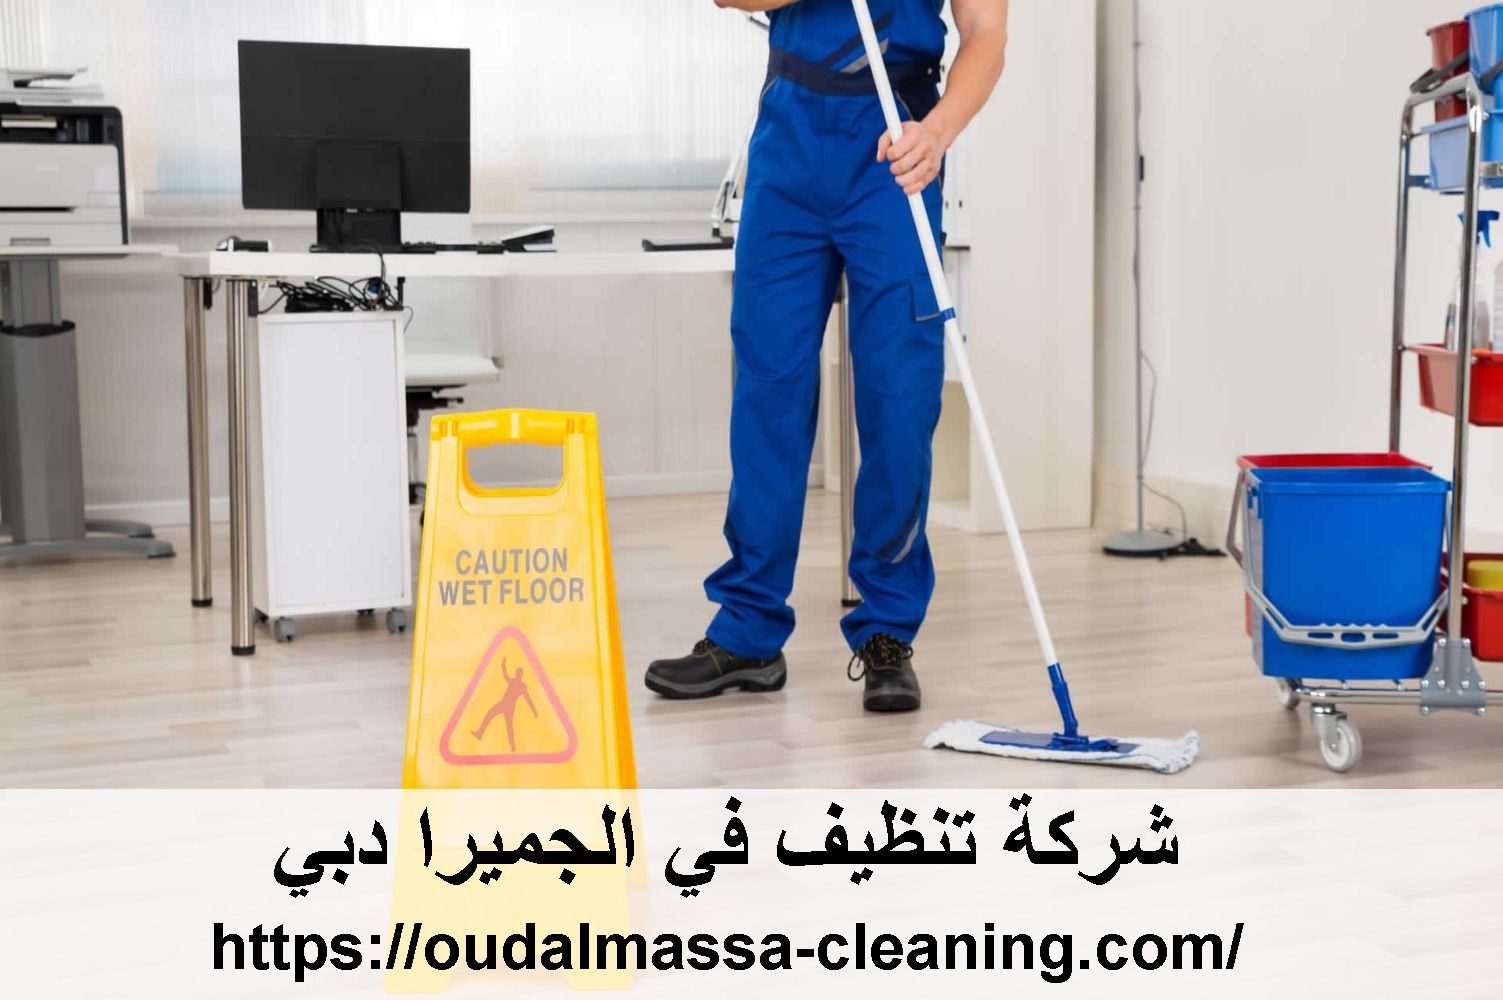 شركة تنظيف في الجميرا دبي